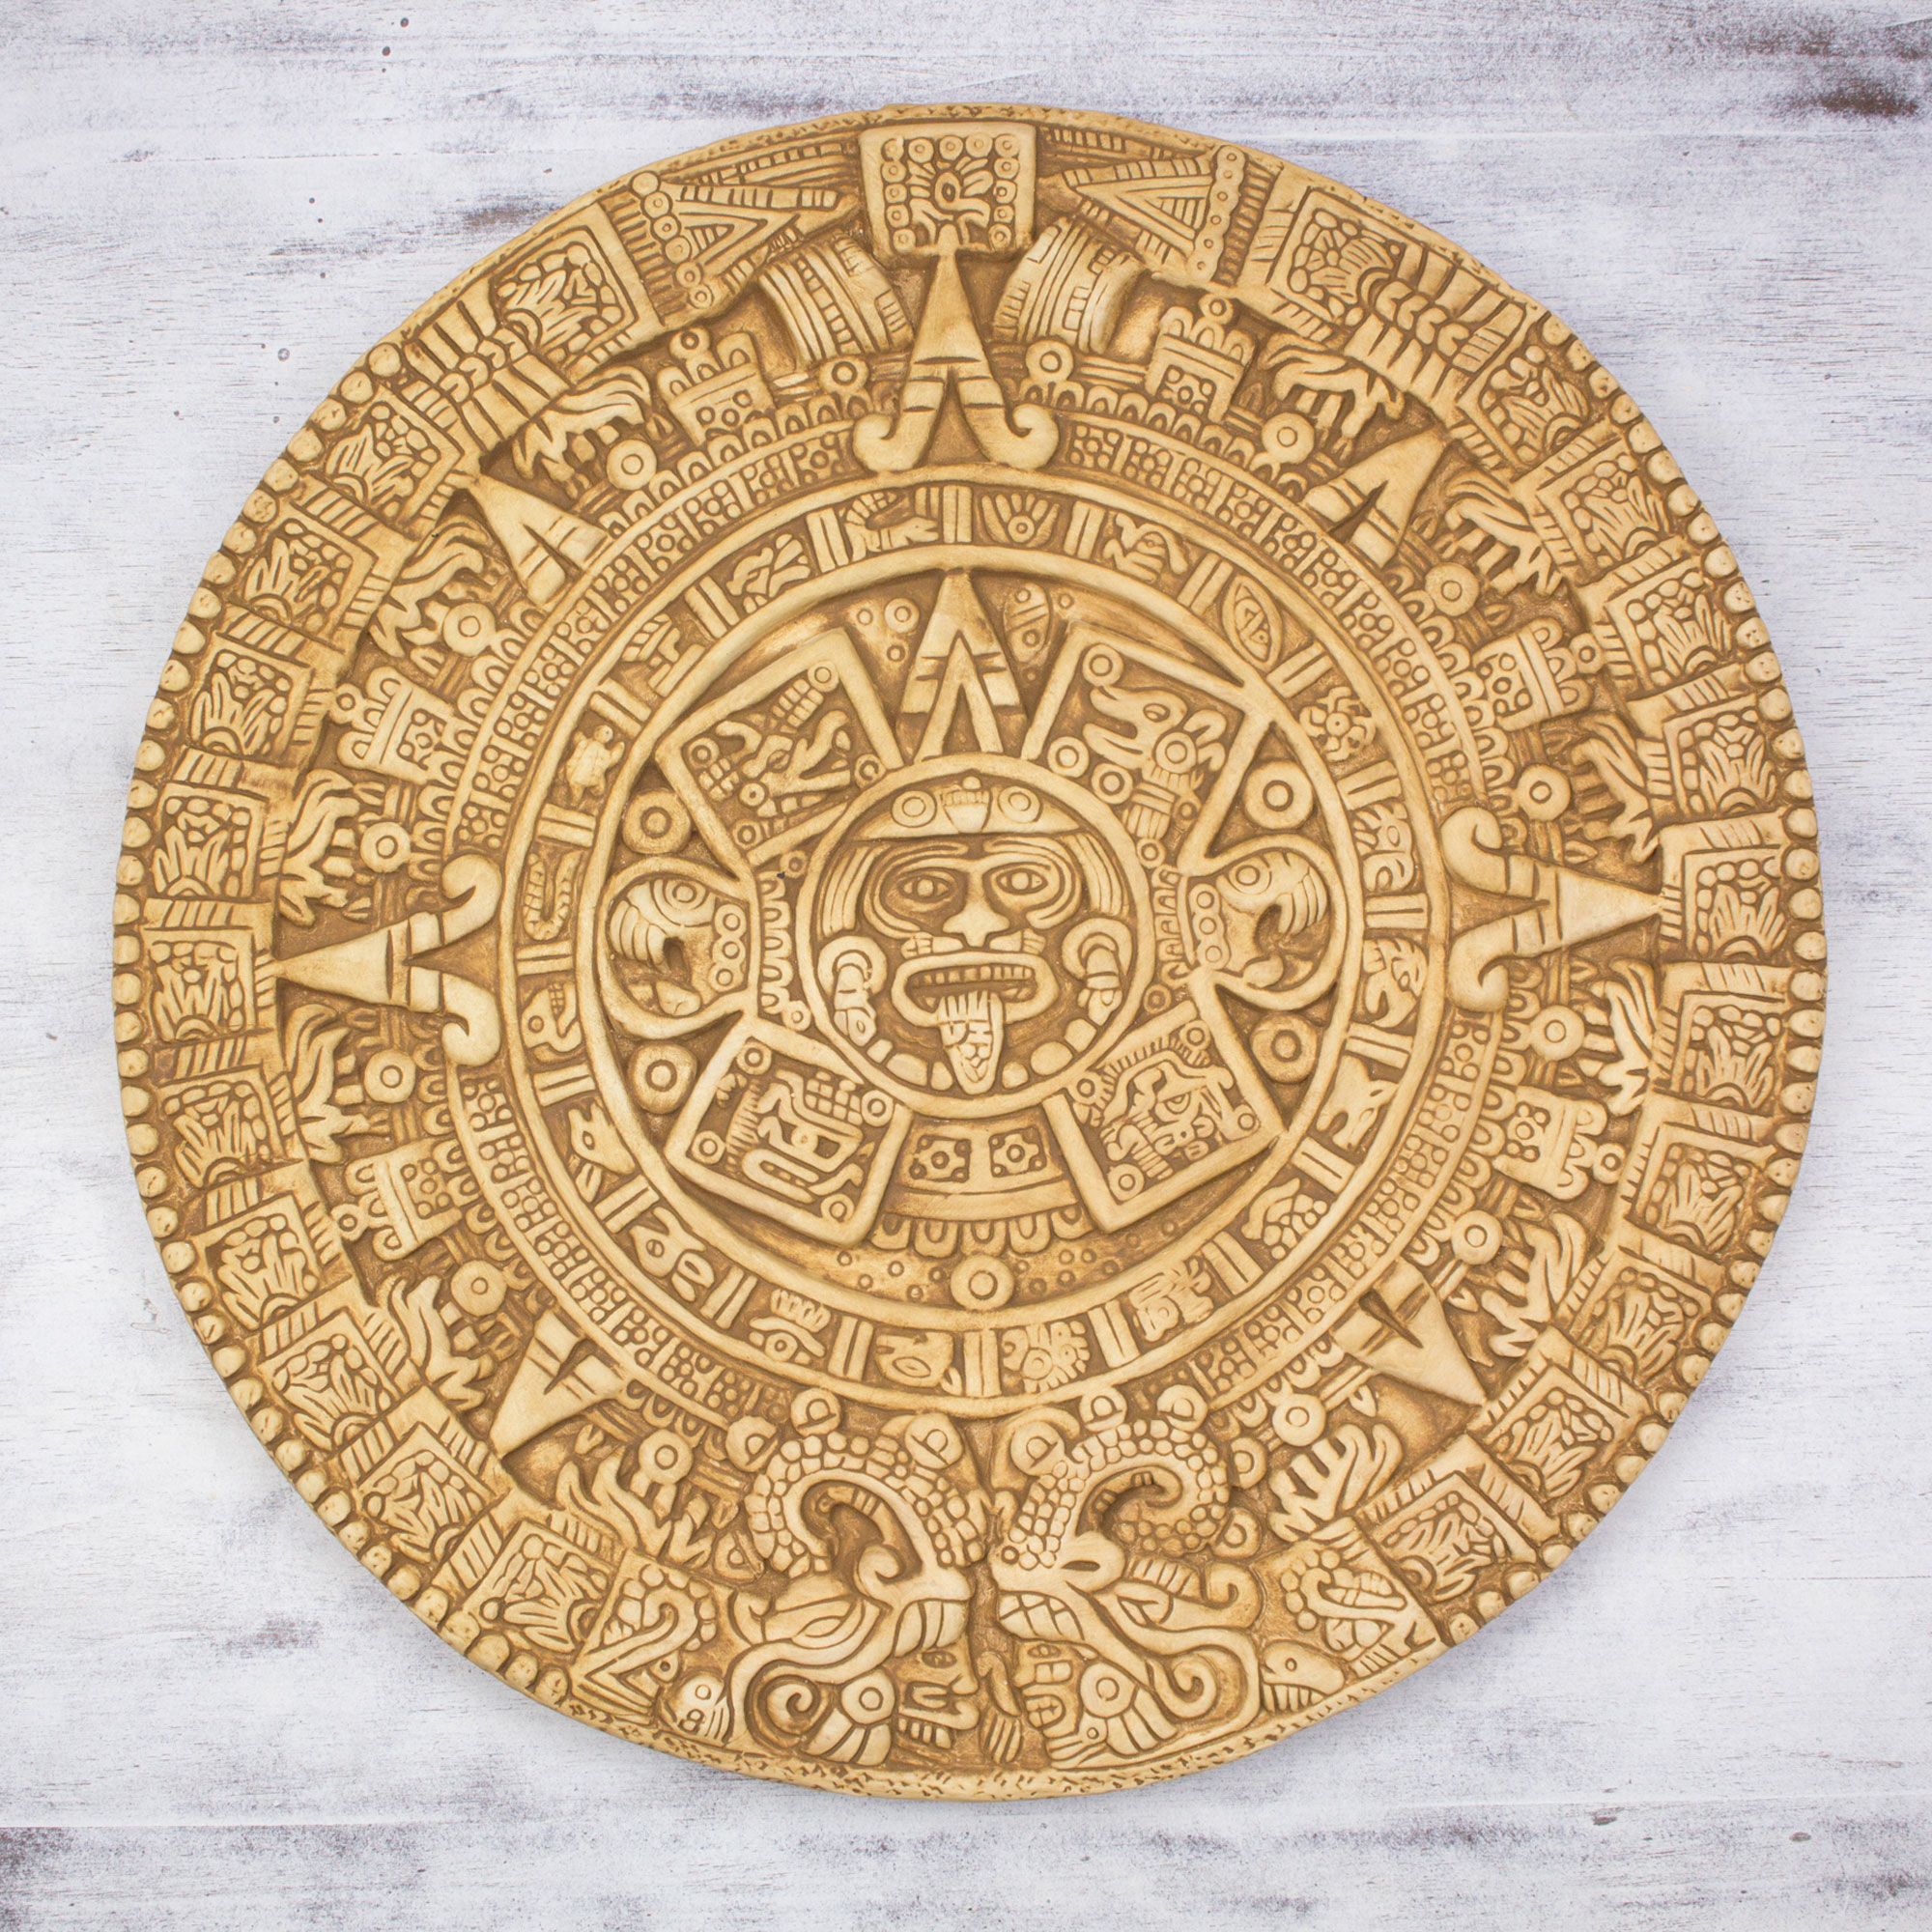 Календарь майя слушать полностью. Солнечный камень ацтеков. Ацтекский камень солнца. Ацтекский календарь камень солнца. Индейцы Майя календарь Цолькин.